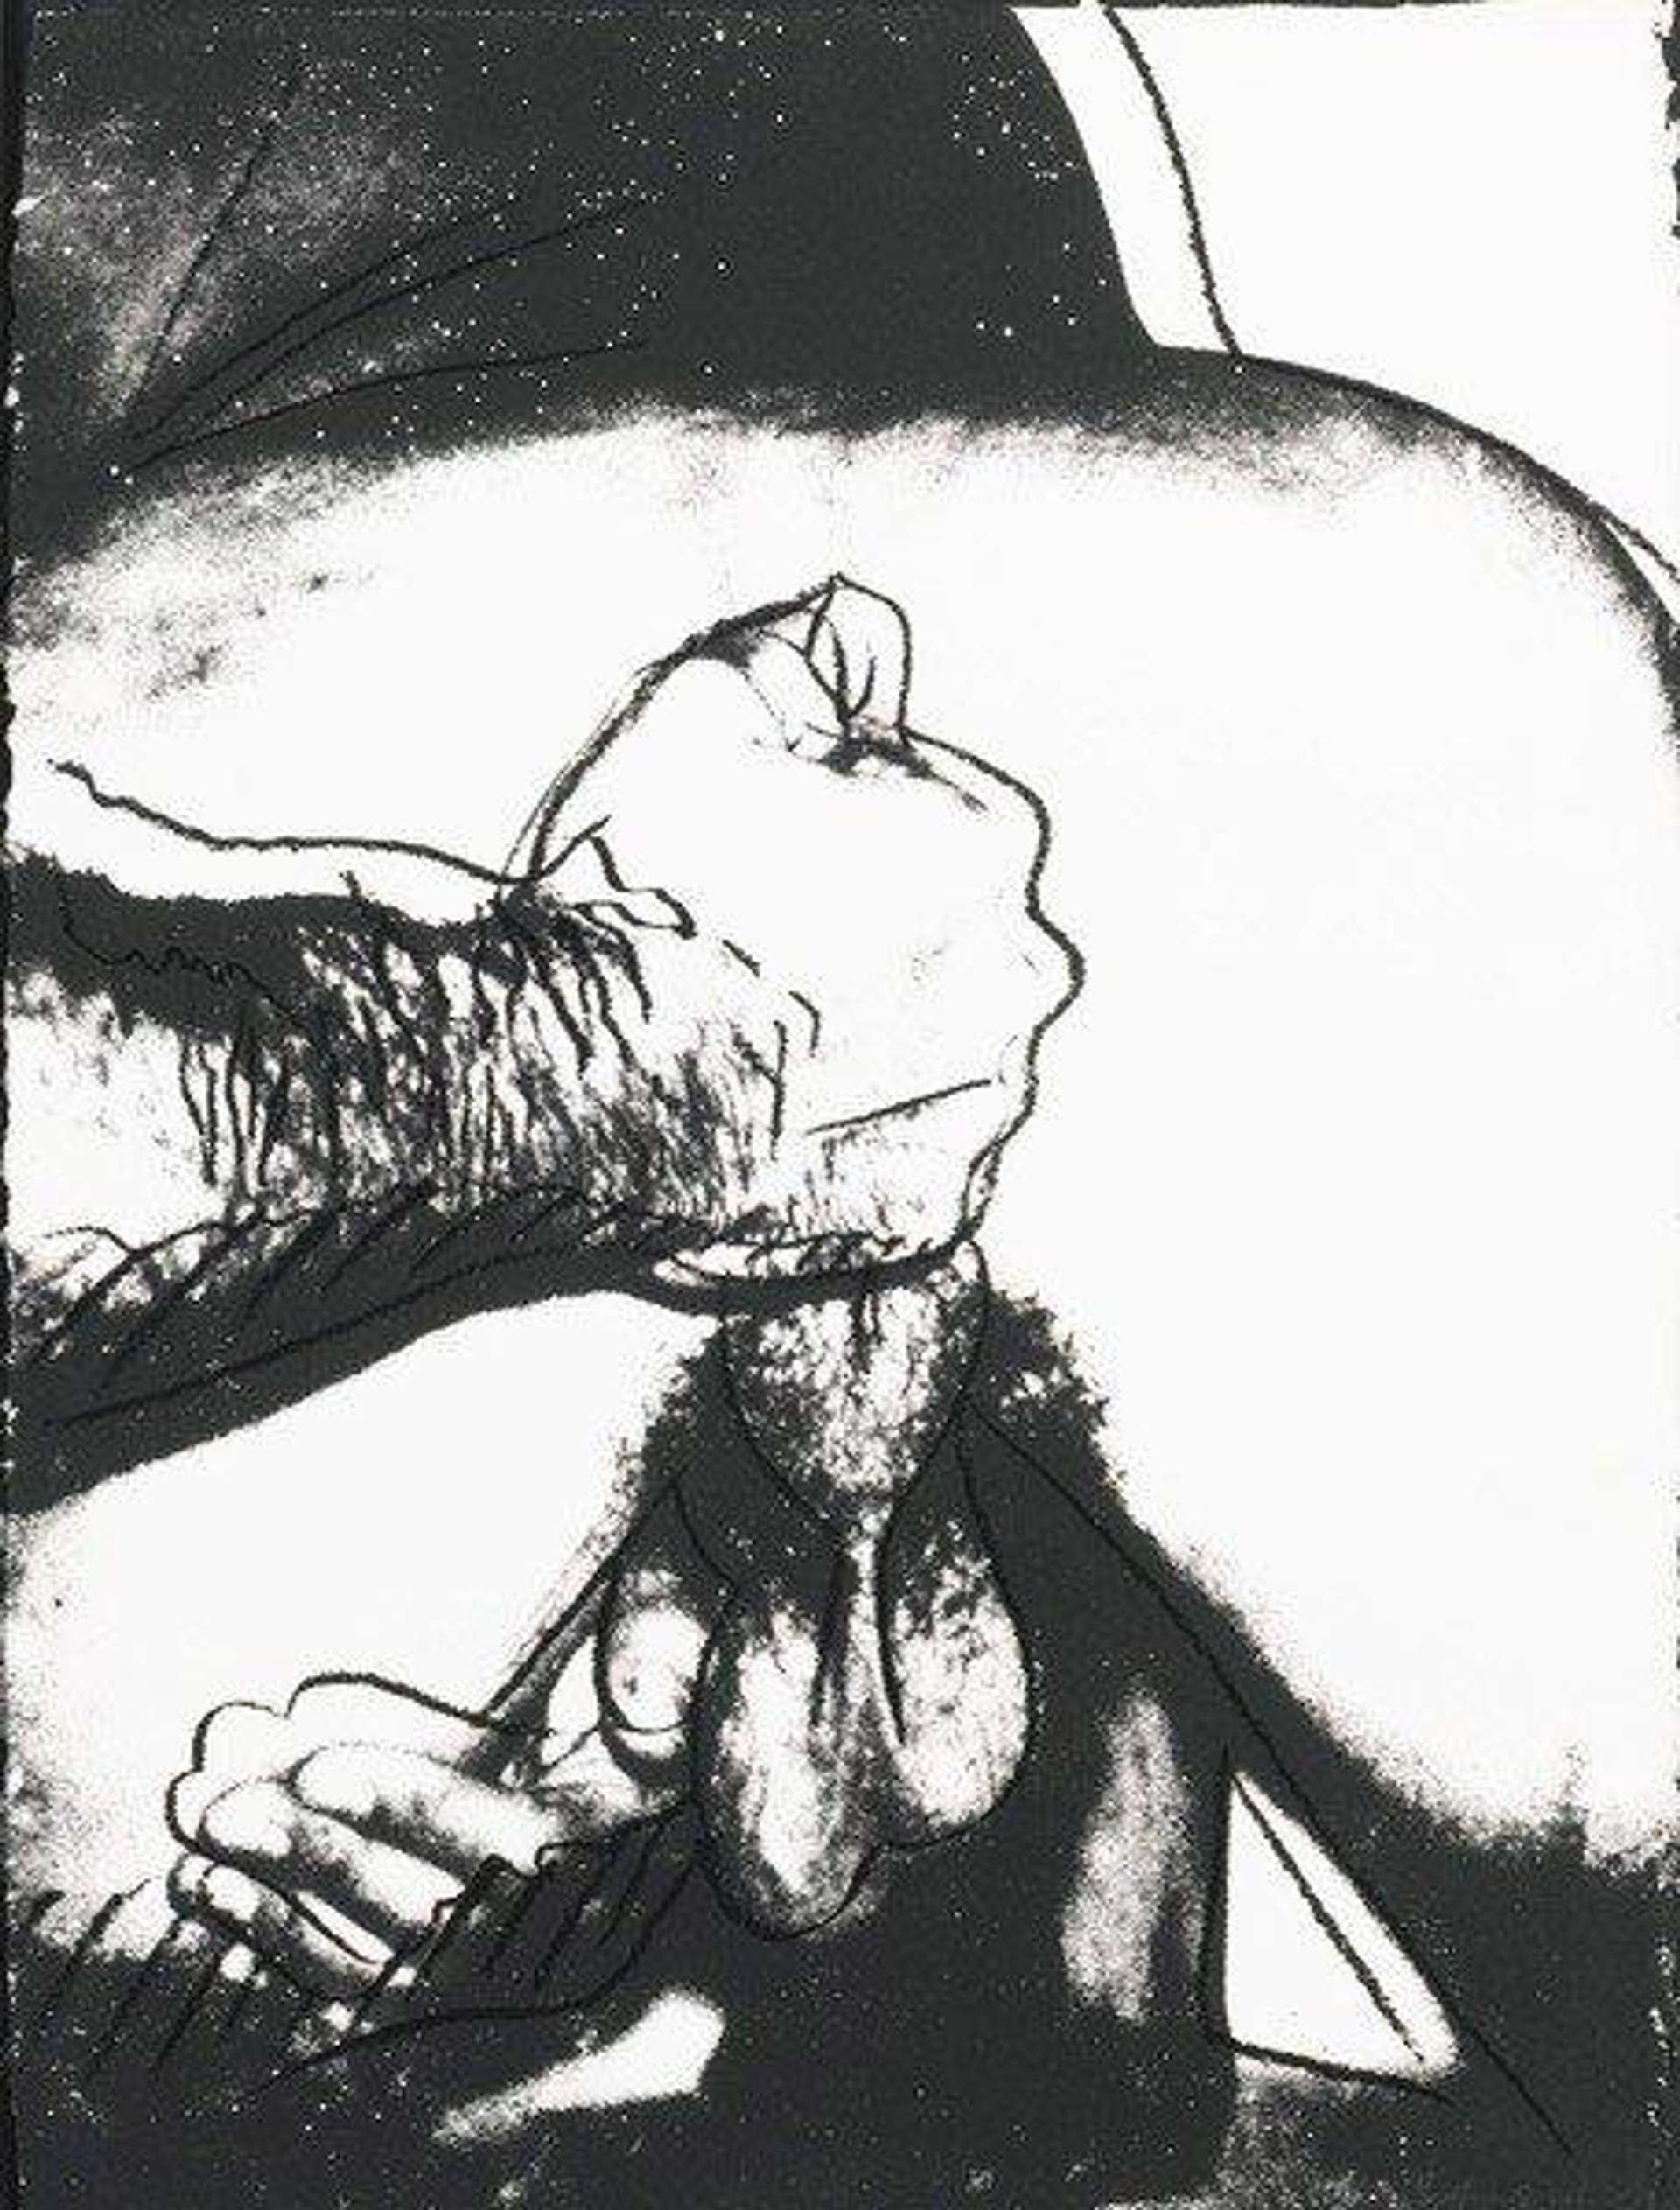 Sex Parts (F. & S. II.176) by Andy Warhol - MyArtBroker